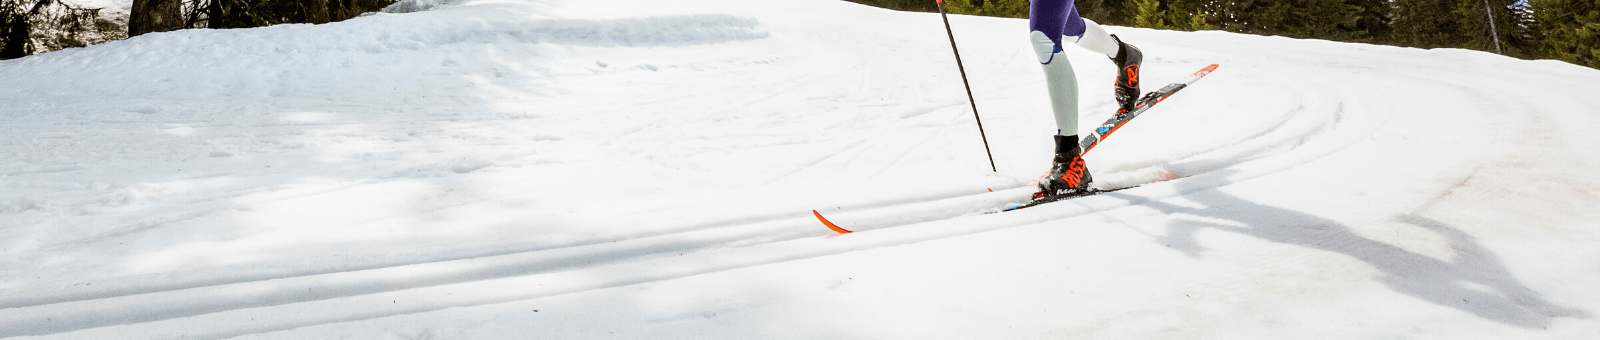 Skis de fond: Classique